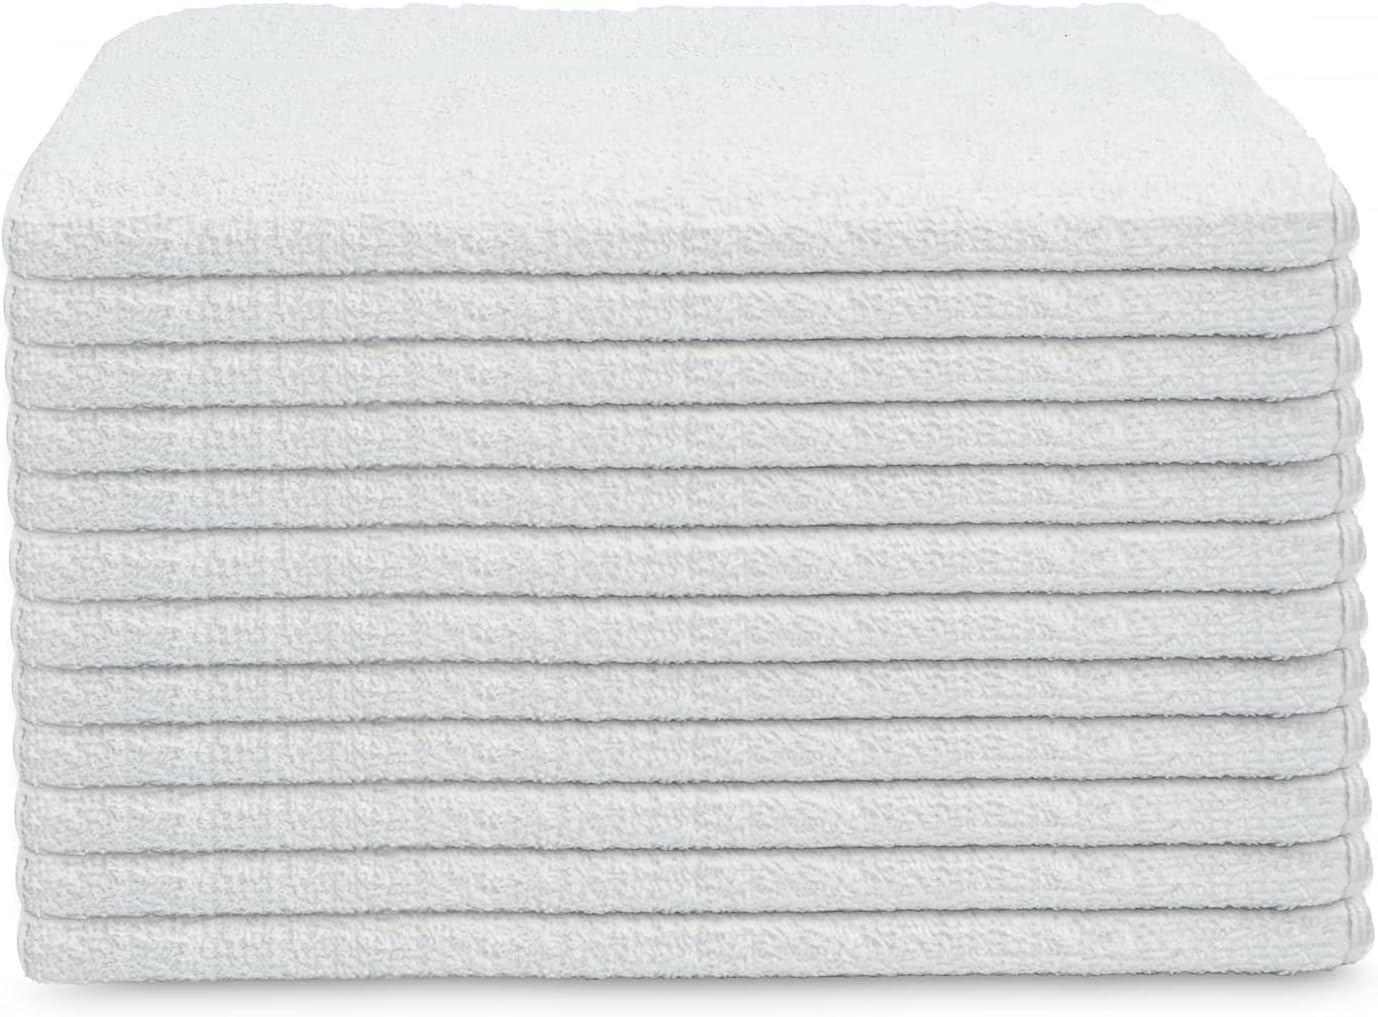 White Shop Towels 12 trapos de 27 x 54 pulgadas en una caja, valiosos trapos de